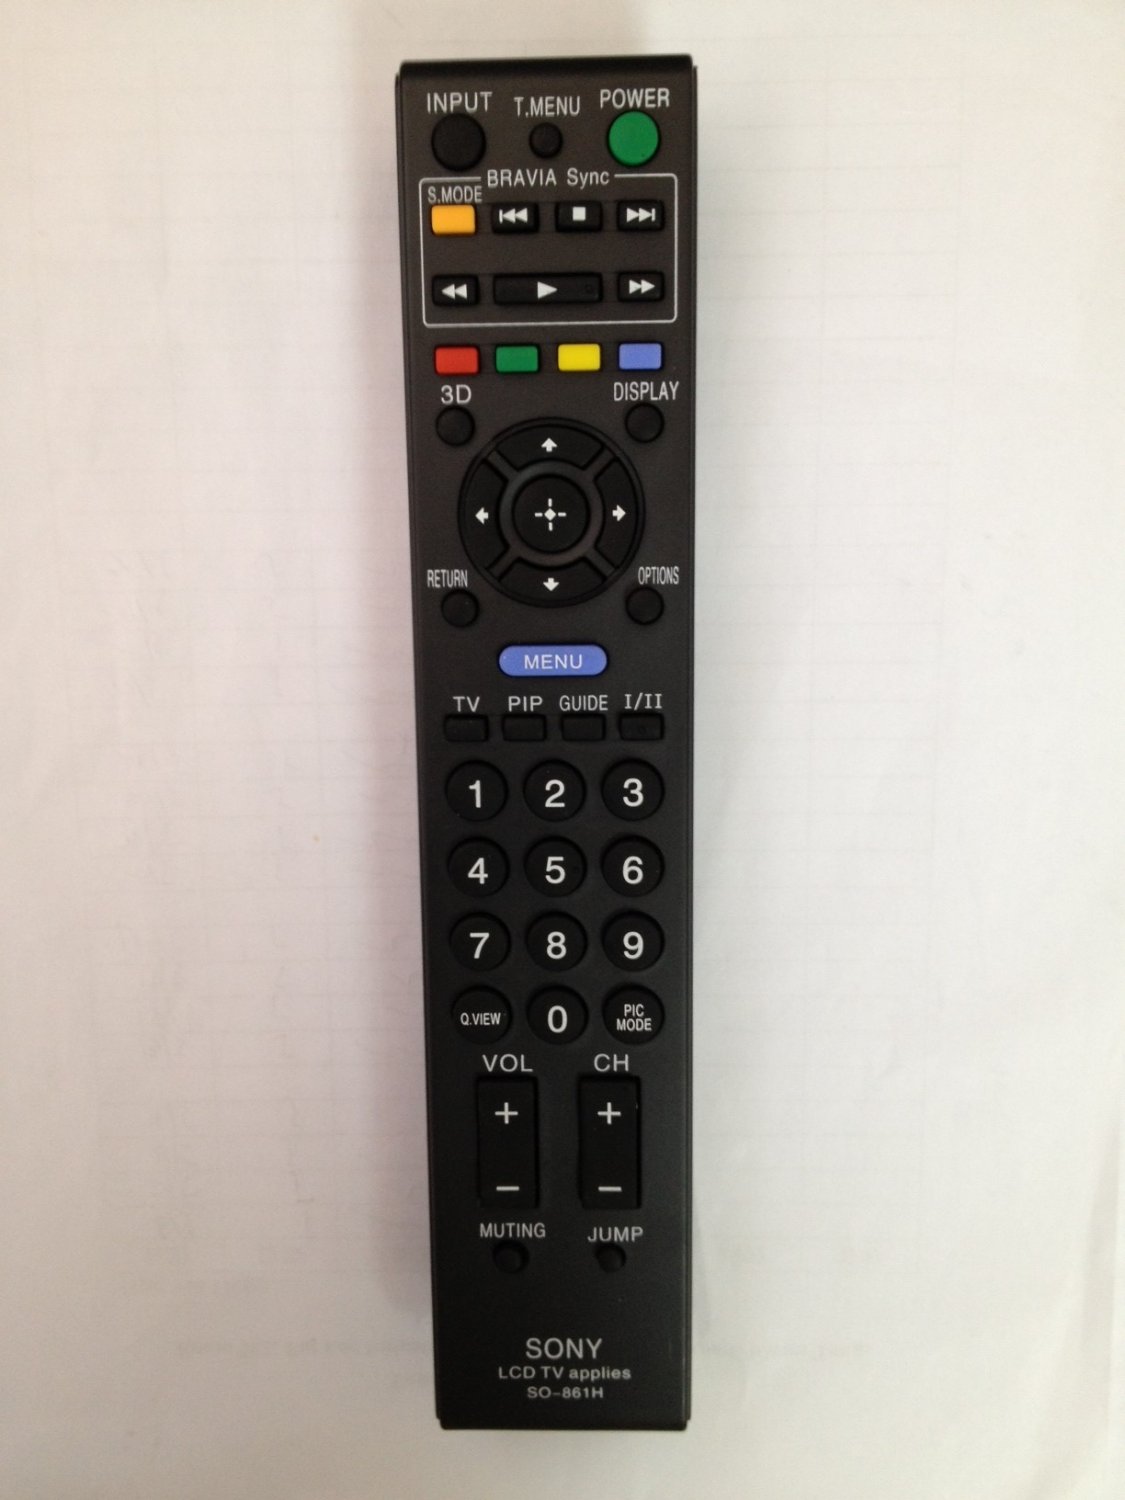 REMOTE CONTROL FOR SONY TV KDL-52XBR KDL-46W3100 KDL-52X3100 XBR-40LX900